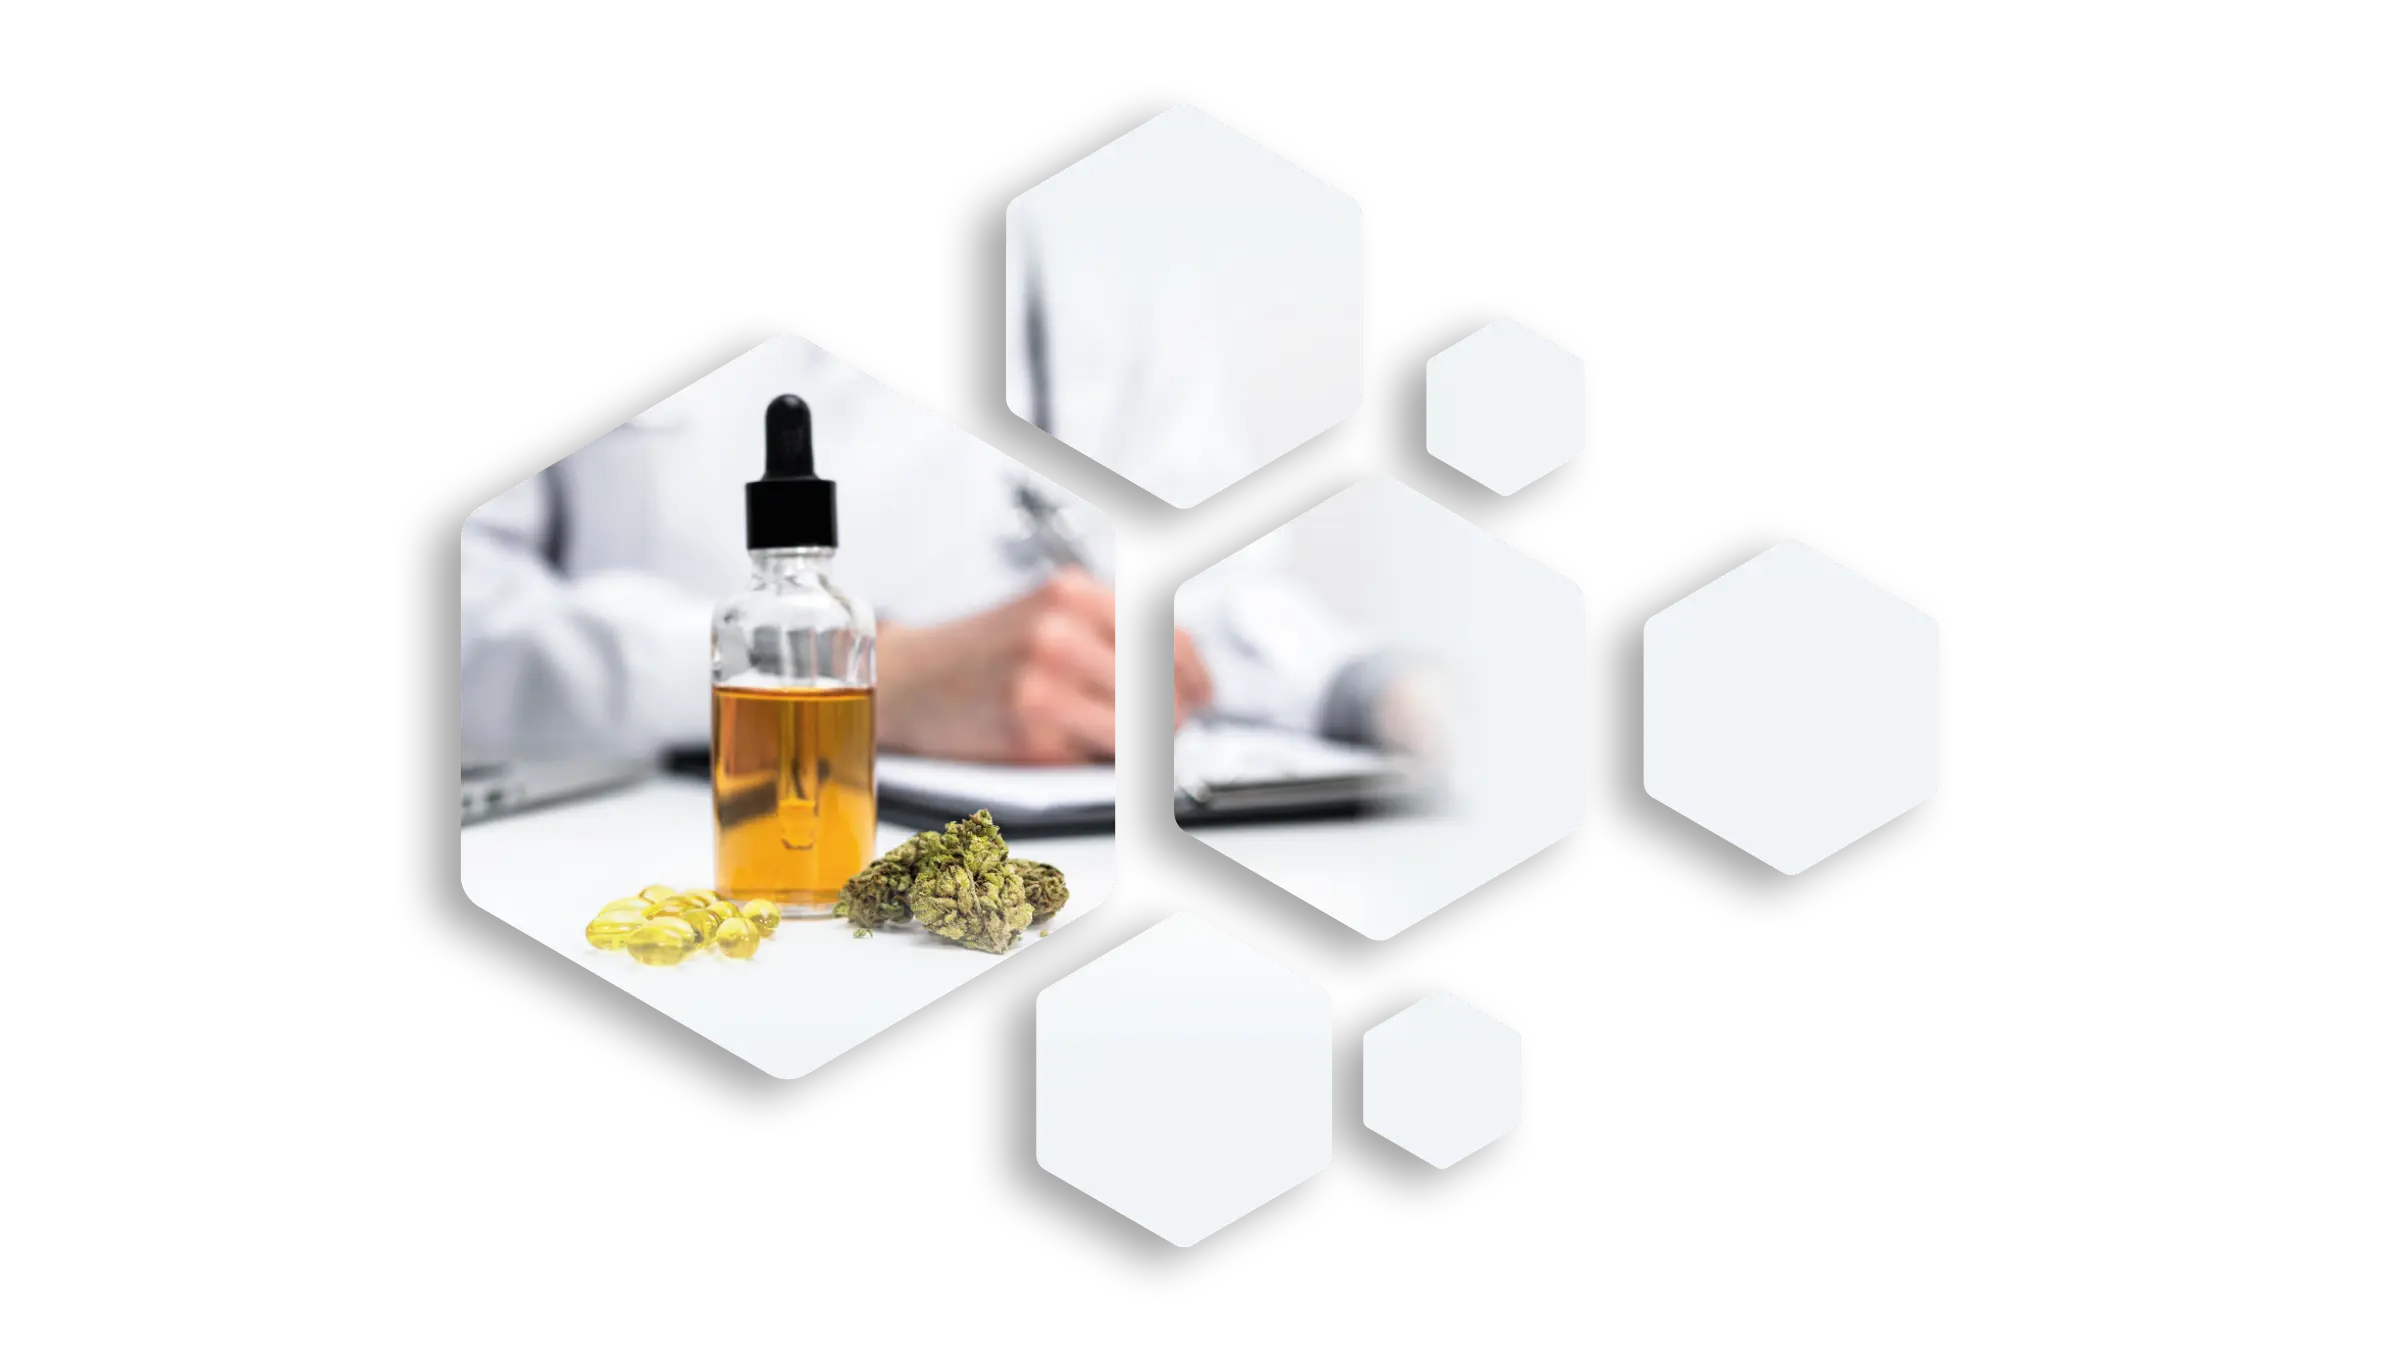 Medizinisches Cannabis in einem stilistische Hexagonnetz als durchgängiges Stilelement des CANMEDAPO Corporate Designs